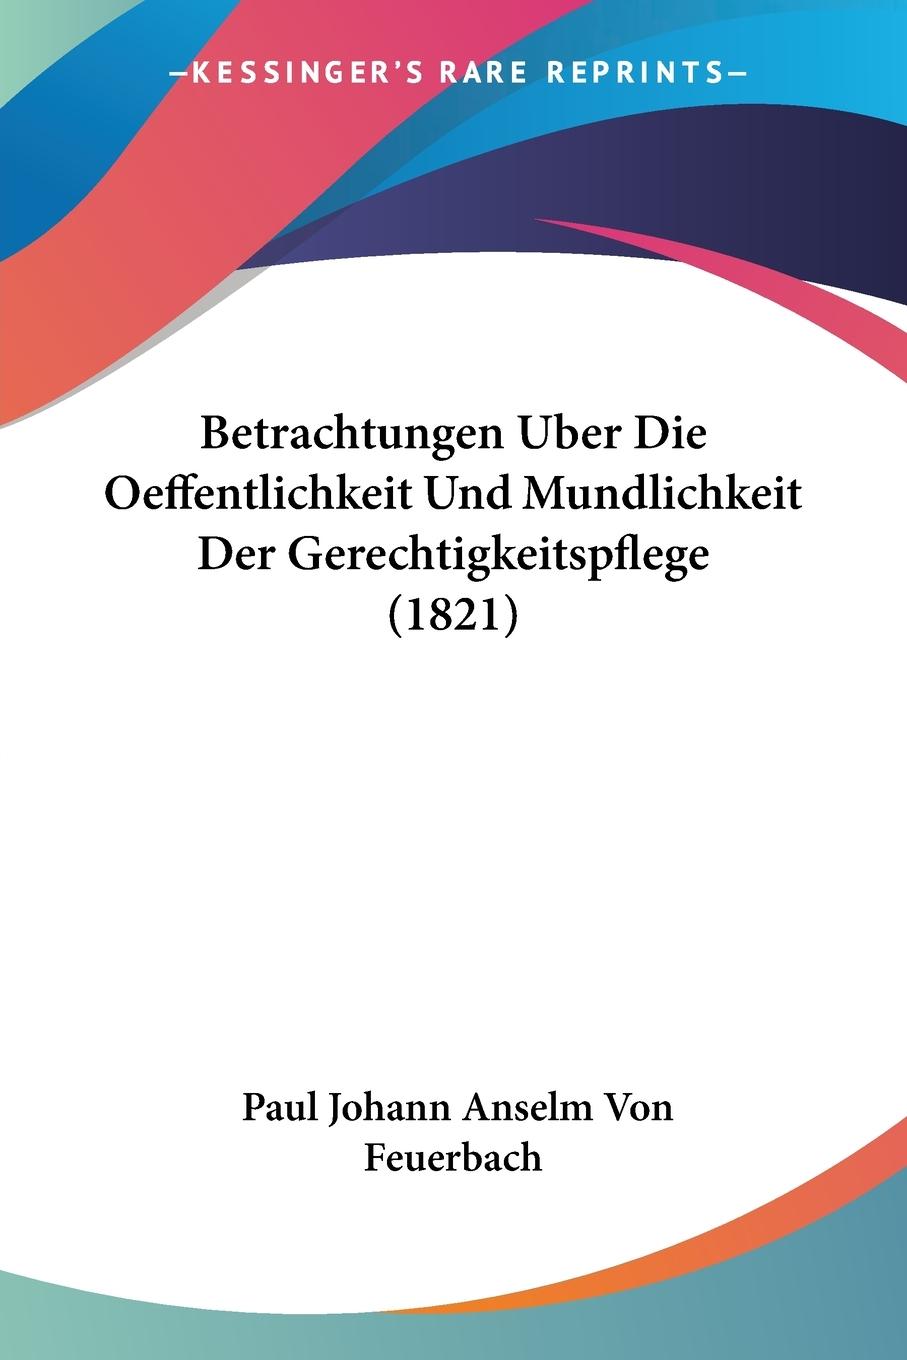 Betrachtungen Uber Die Oeffentlichkeit Und Mundlichkeit Der Gerechtigkeitspflege (1821) - Feuerbach, Paul Johann Anselm Von